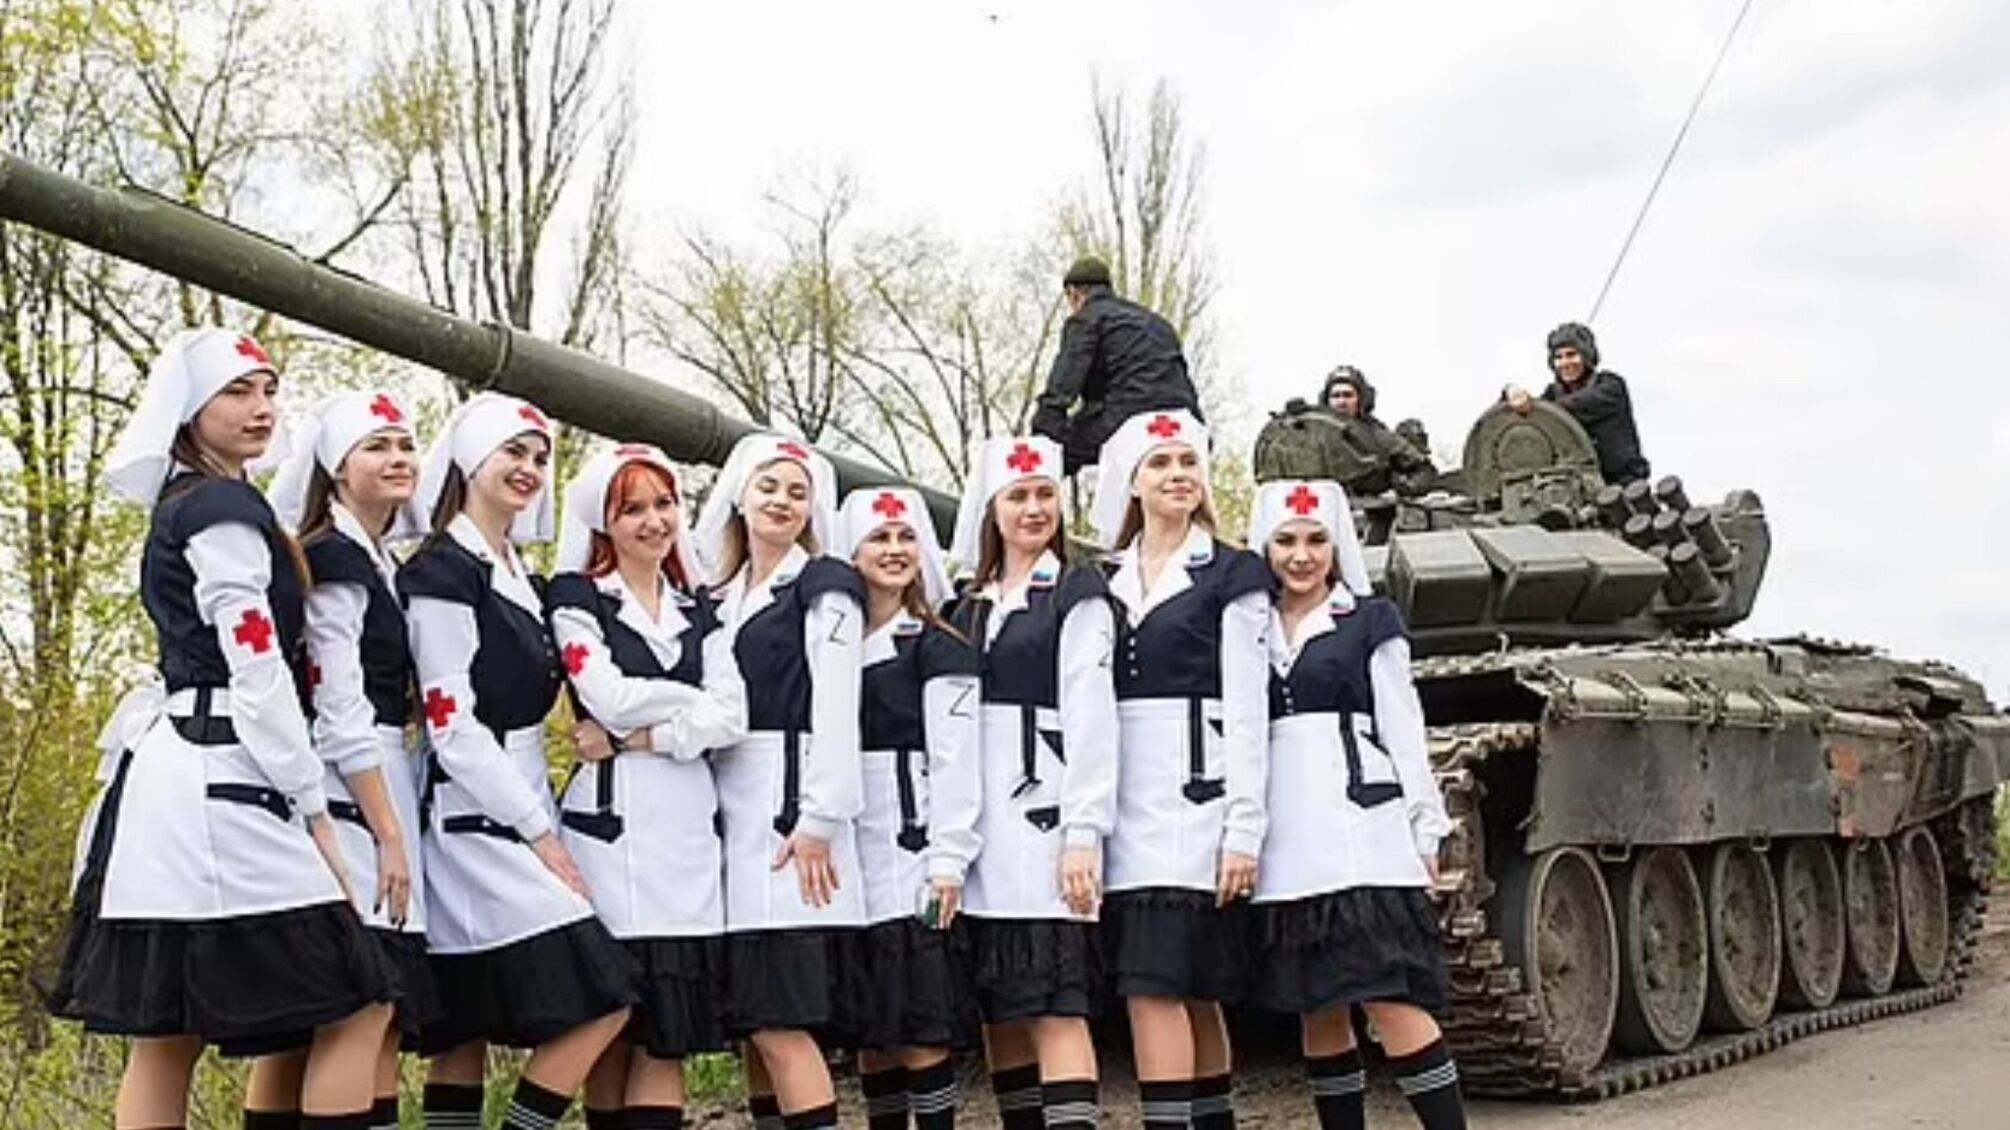 Пели частушки и позировали возле танков: россия привезла на Луганщину псевдомедсестер